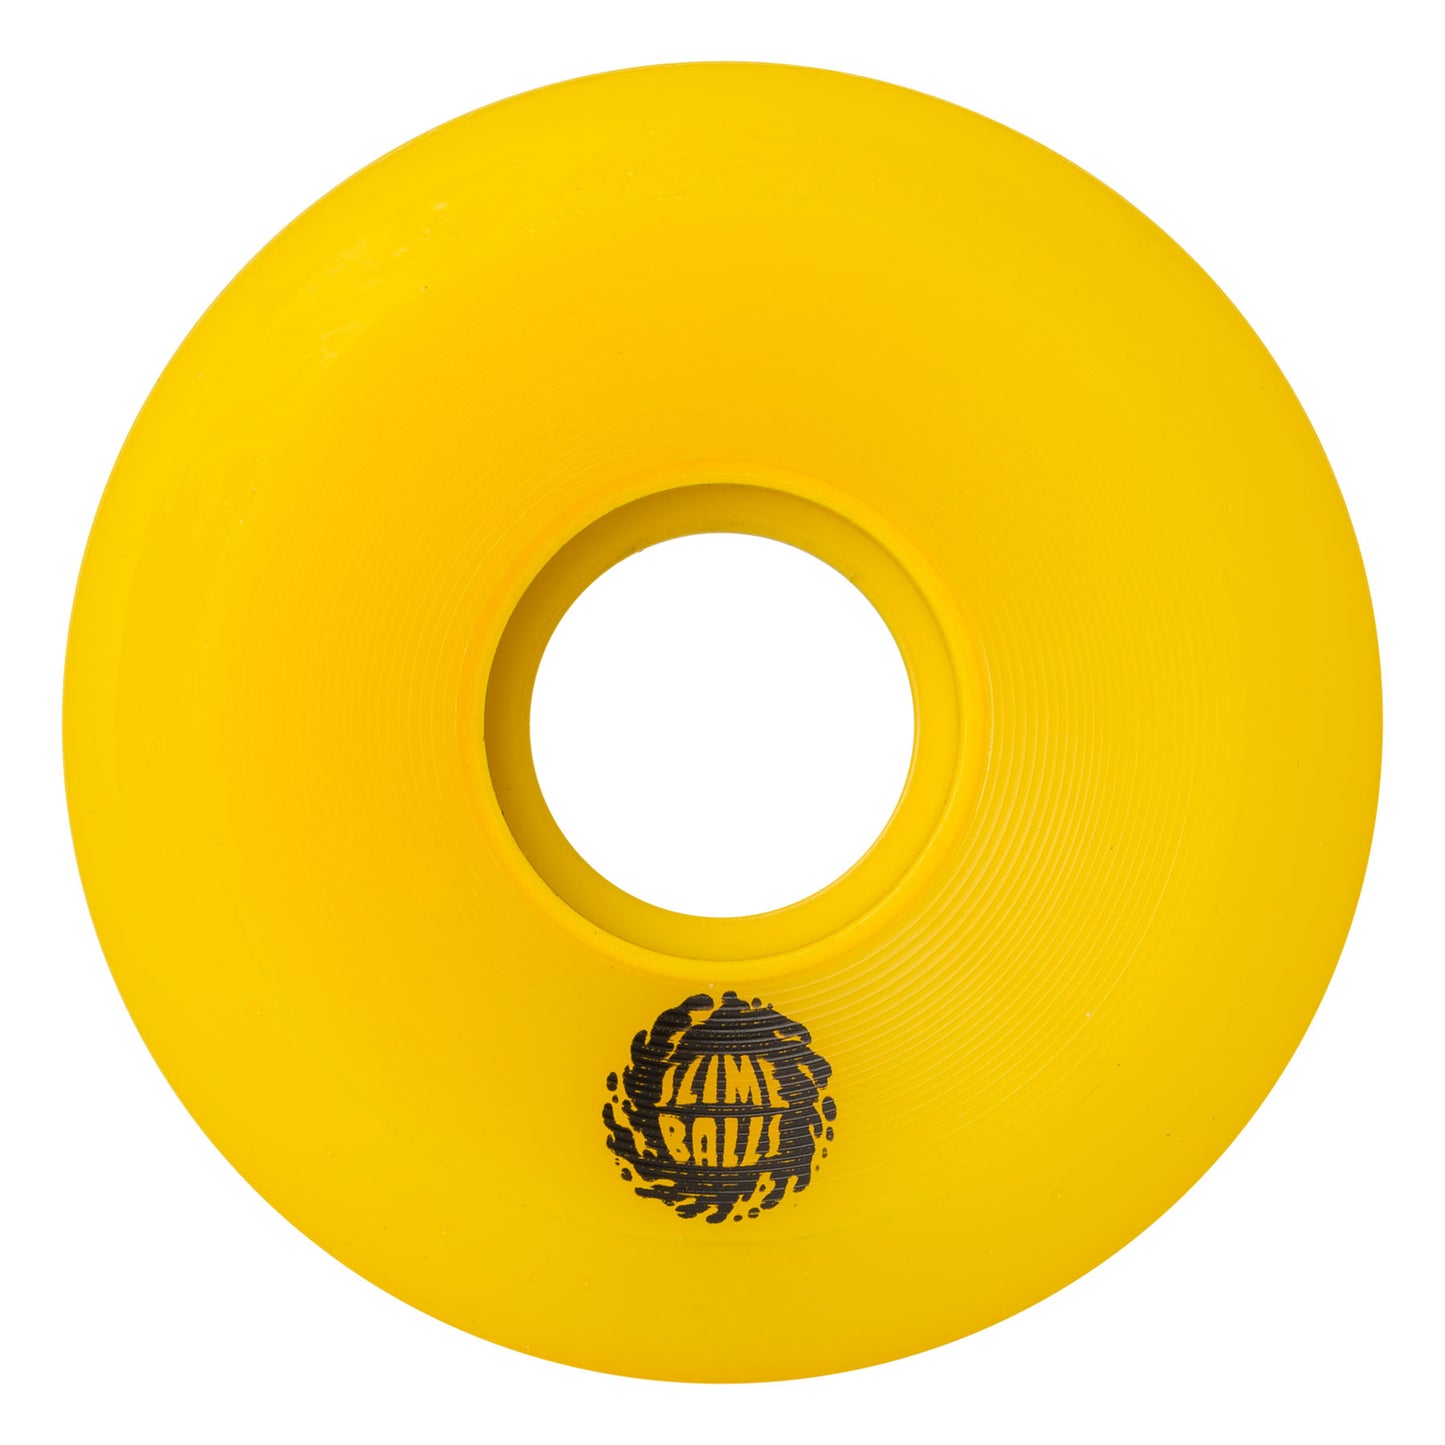 SLIME BALLS - 60mm OG Slime Yellow 78a